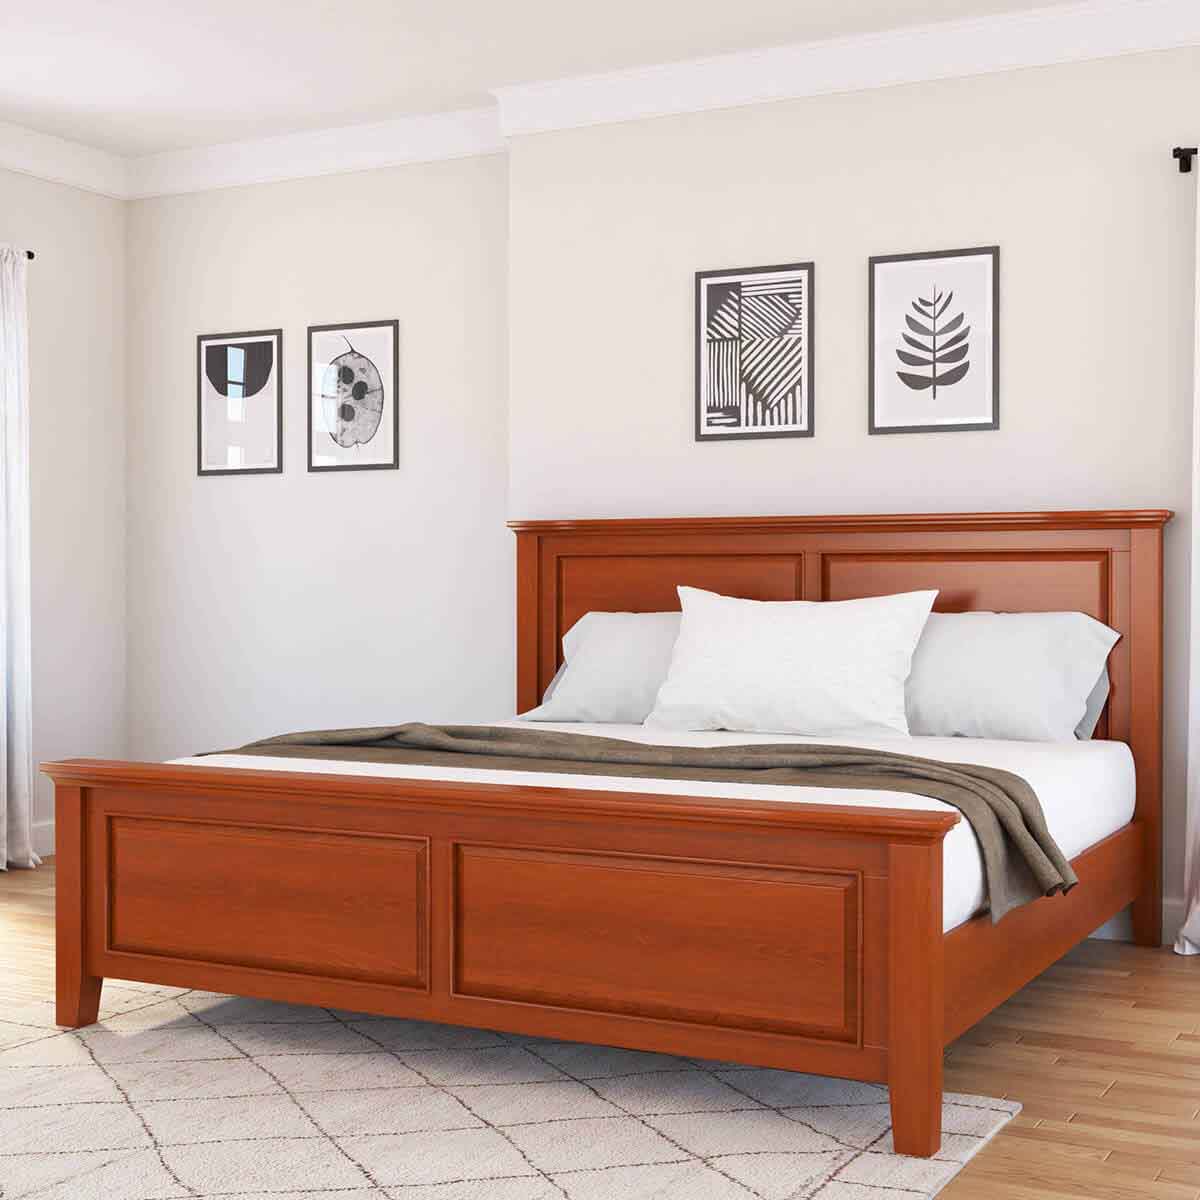 تخت خواب چوبی ساخته شده از چوب ماهون